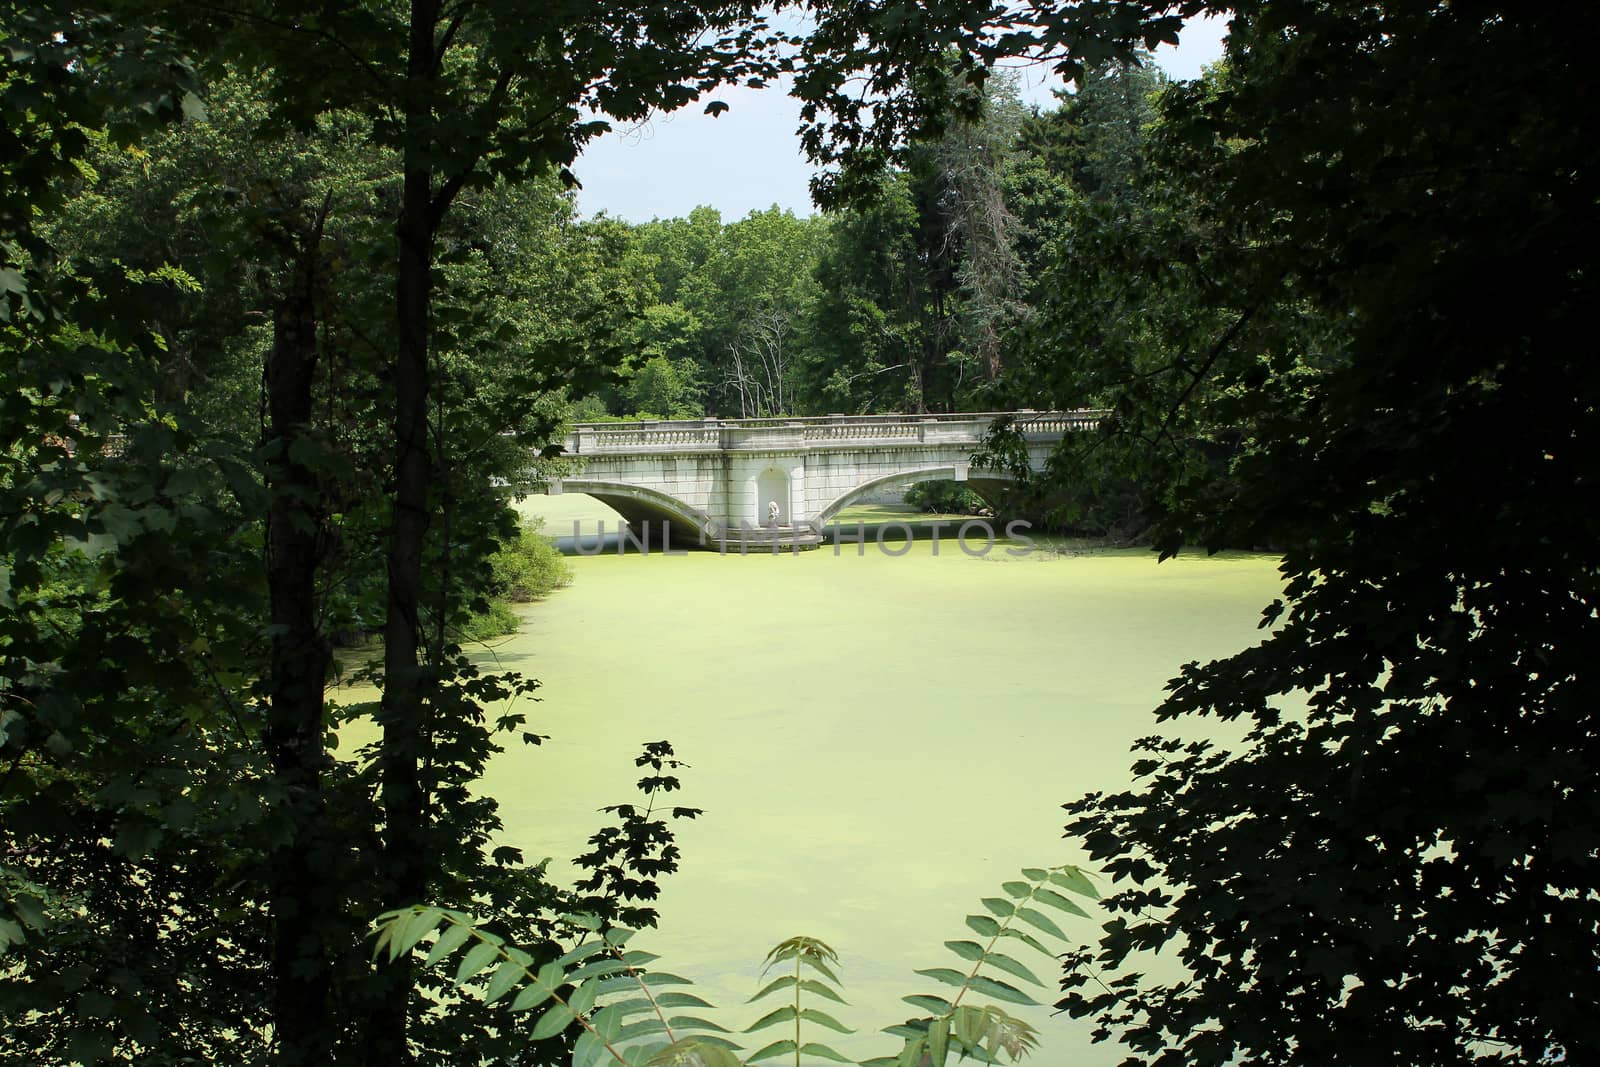 A bridge across a pond